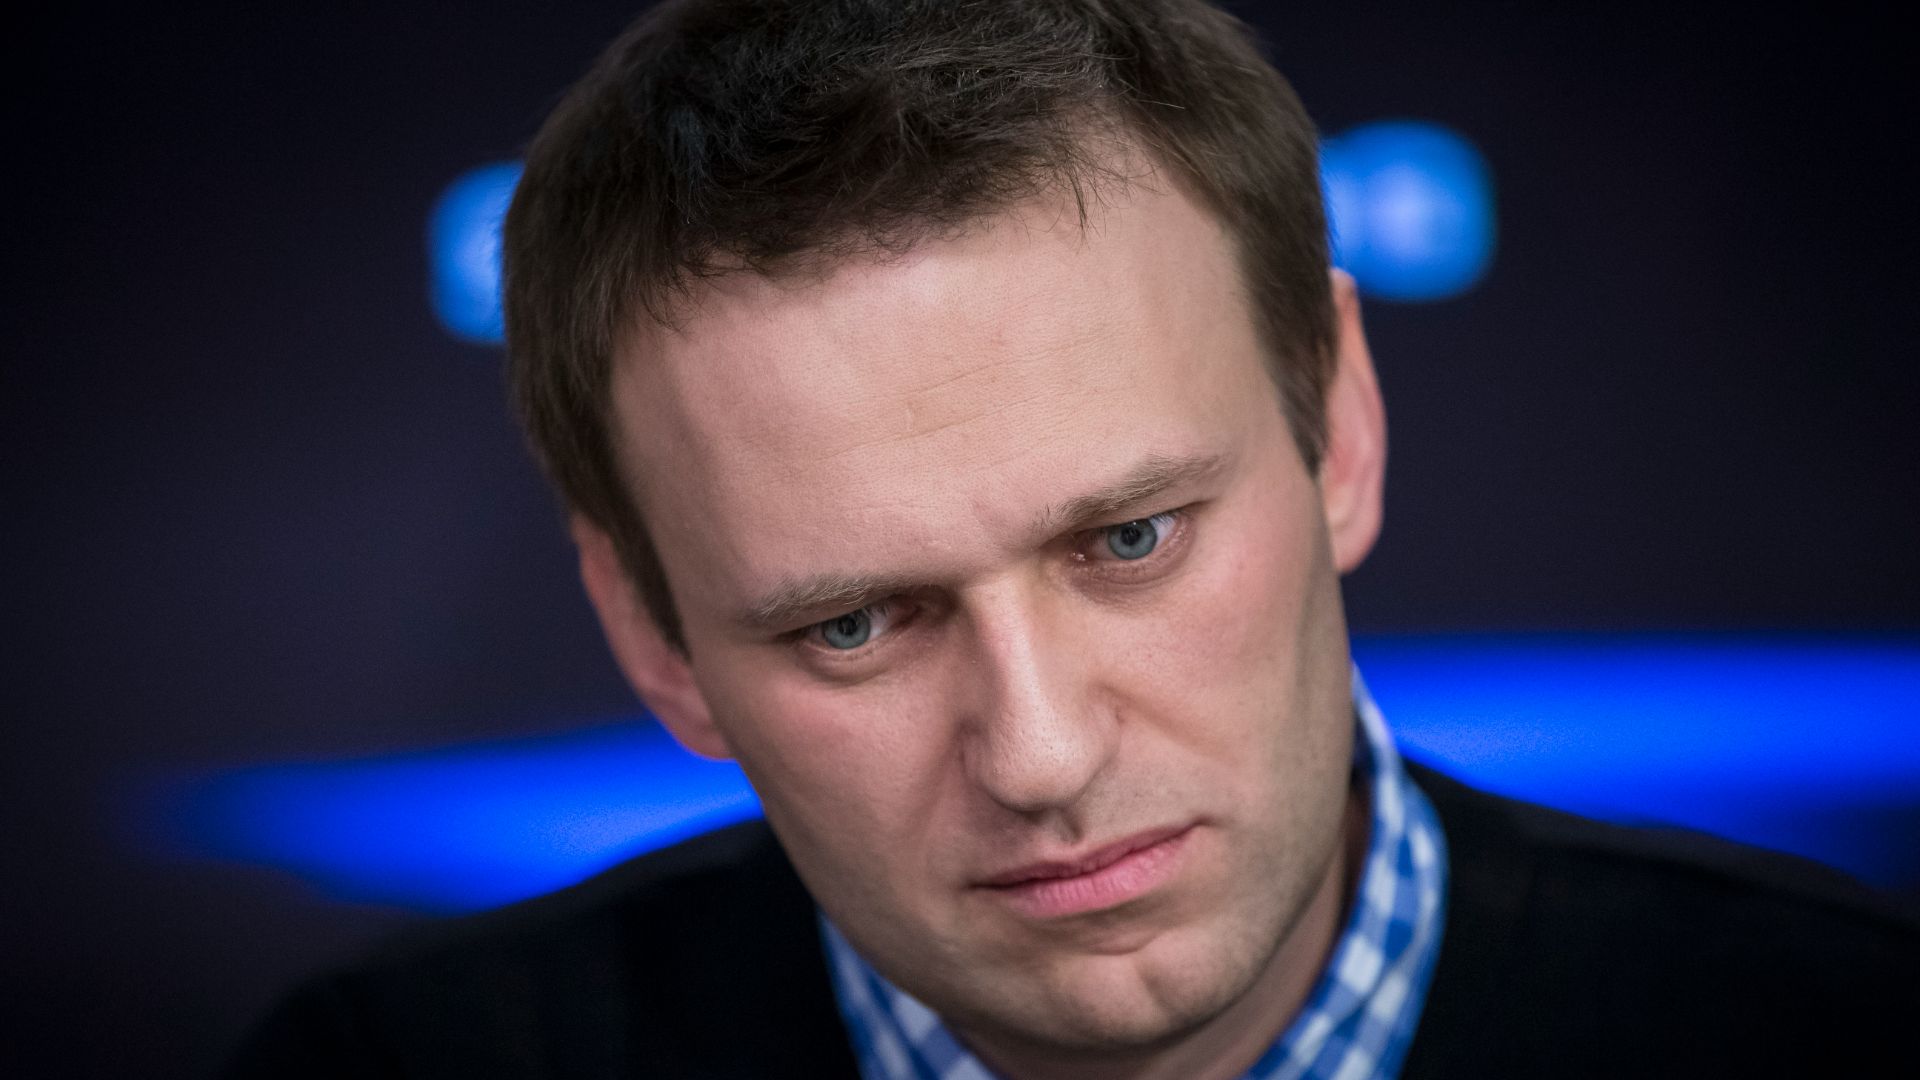 Le chef de l'opposition russe, Alexeï Navalny, écoute une question durant une entrevue pour la radio indépendante l'Écho de Moscou, le 8 avril 2013 à Moscou.